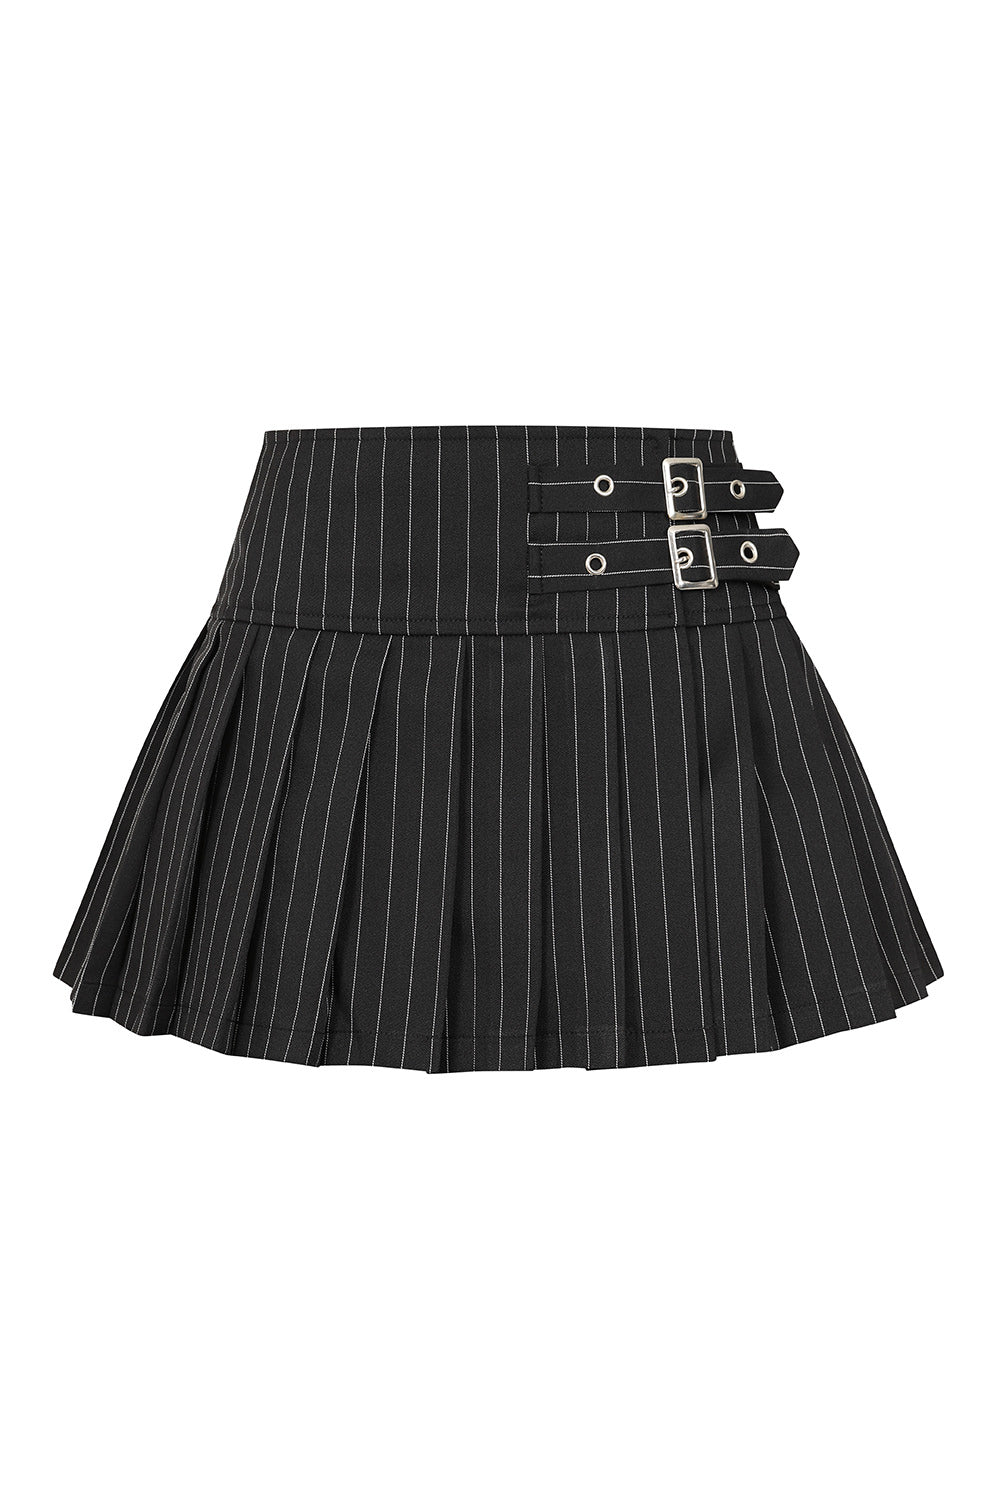 Banned Alternative Skirt